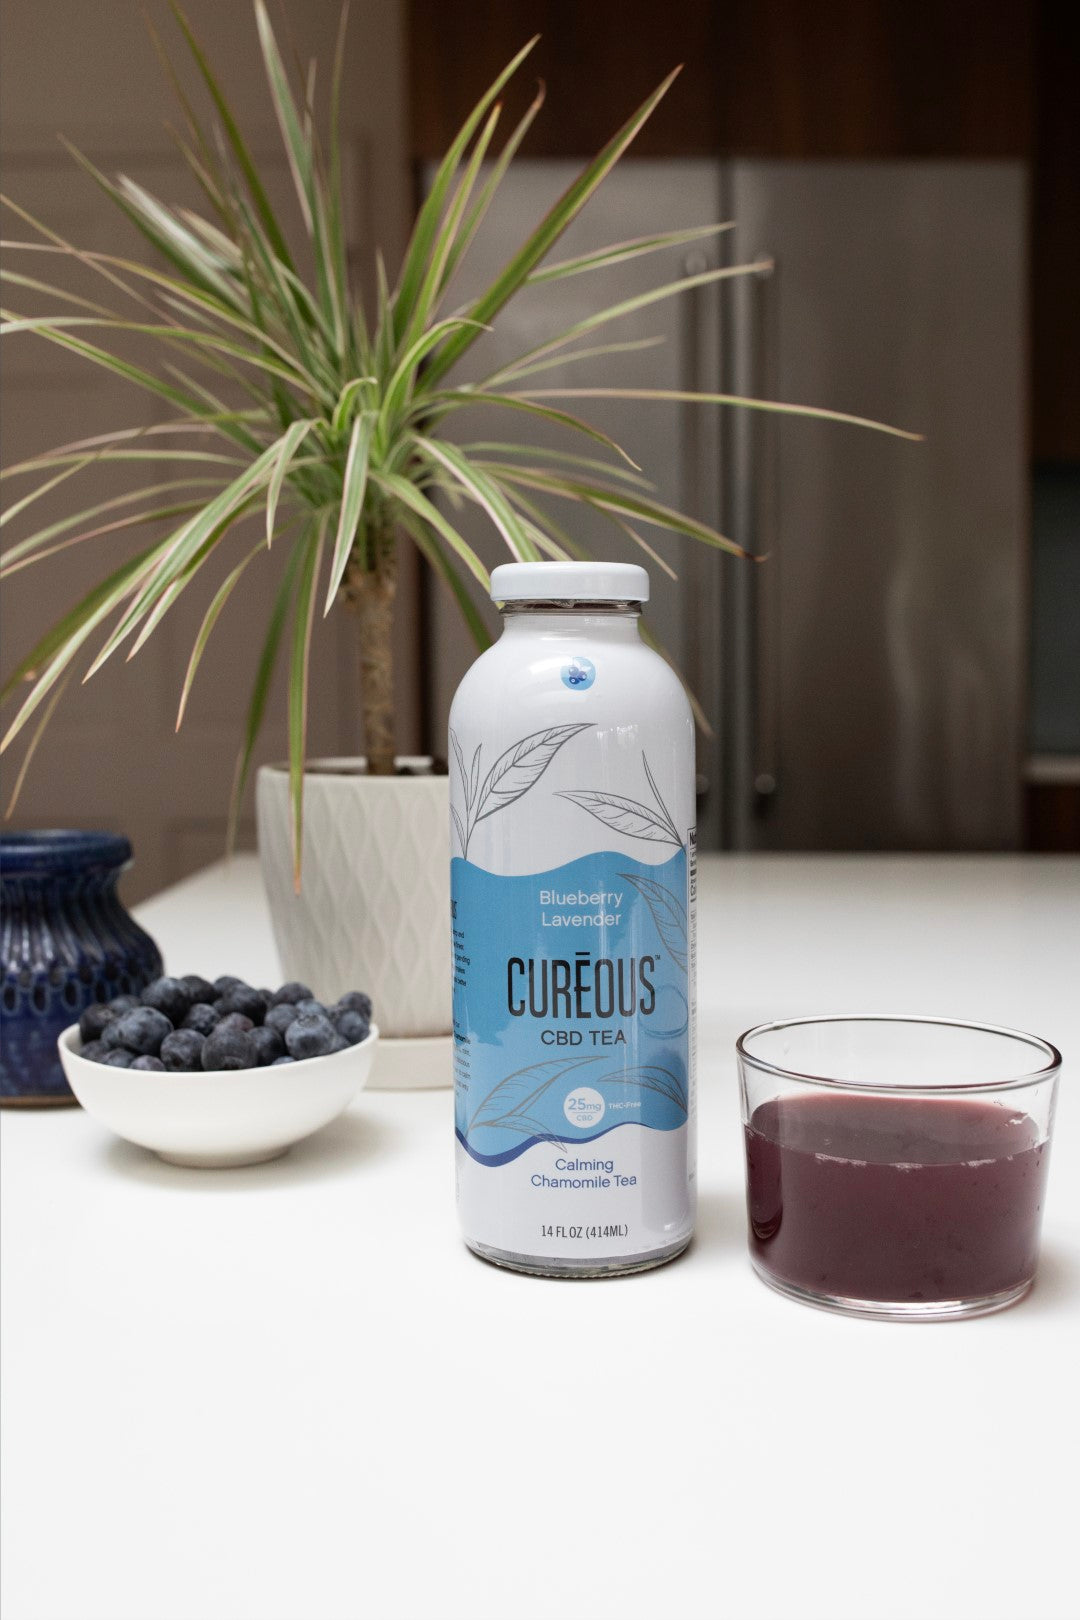 Cureous Blueberry Lavender CBD Tea